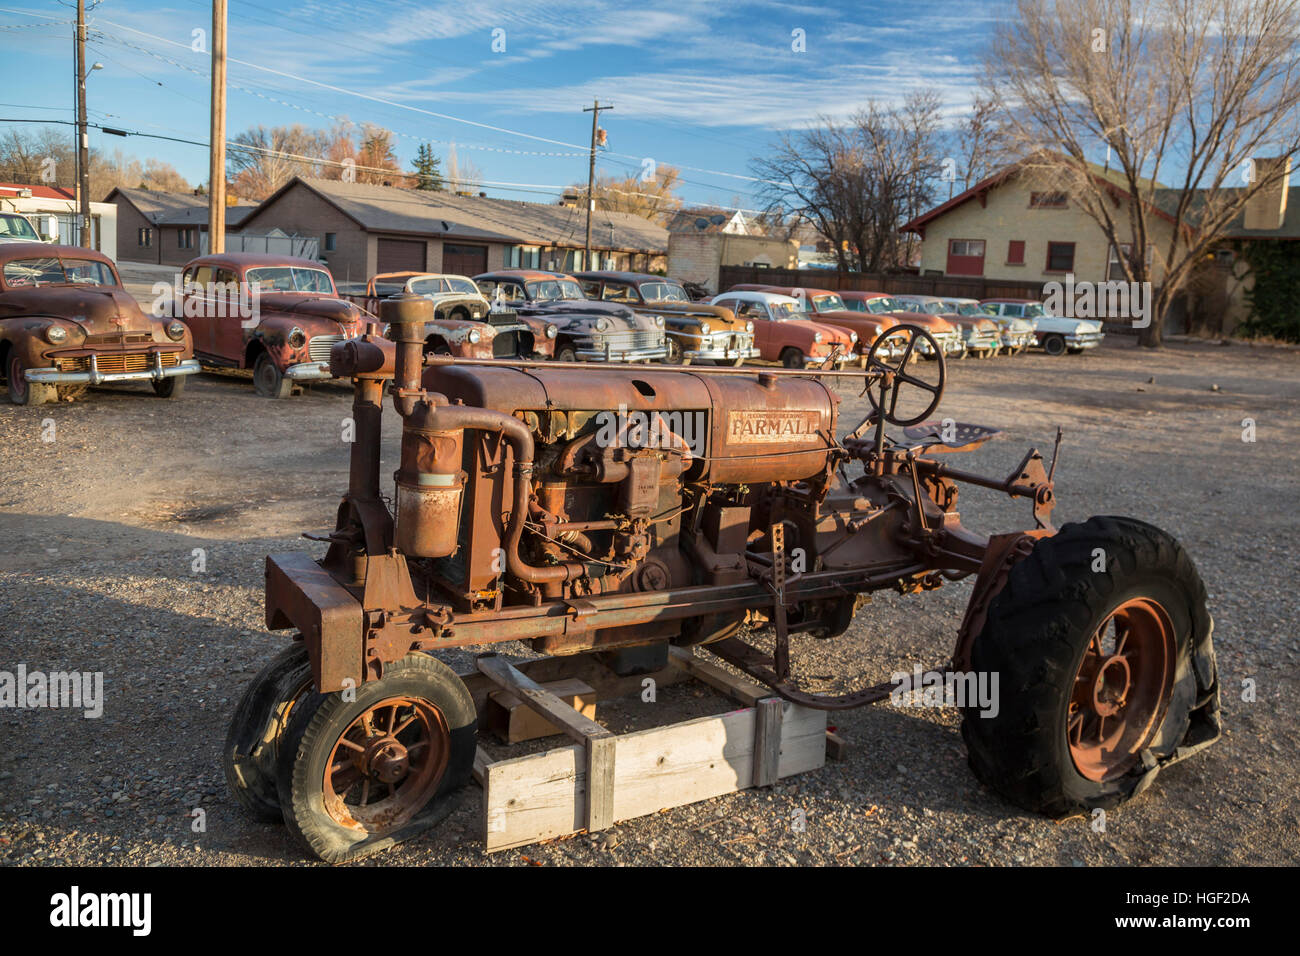 Delta, Colorado - verrostet klassischer Automobile und einen Farmall Traktor auf dem Display an Orvals Gebrauchtwagen. Stockfoto